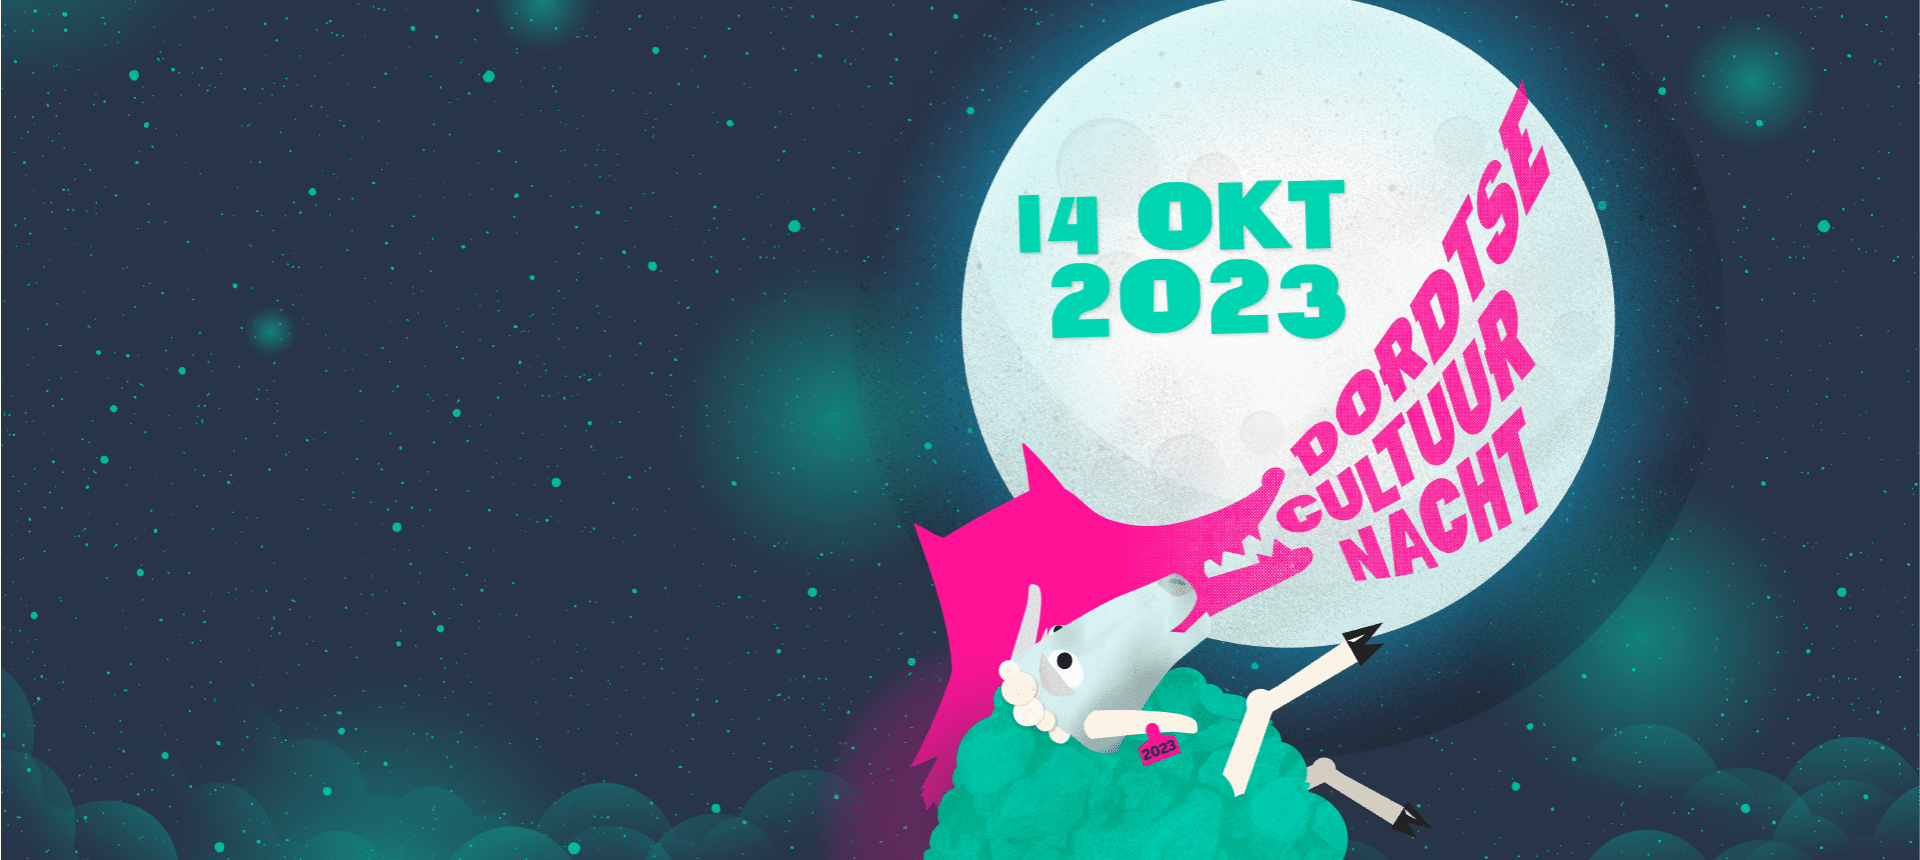 Dordtse cultuurnacht 2023 evenement Dordrecht